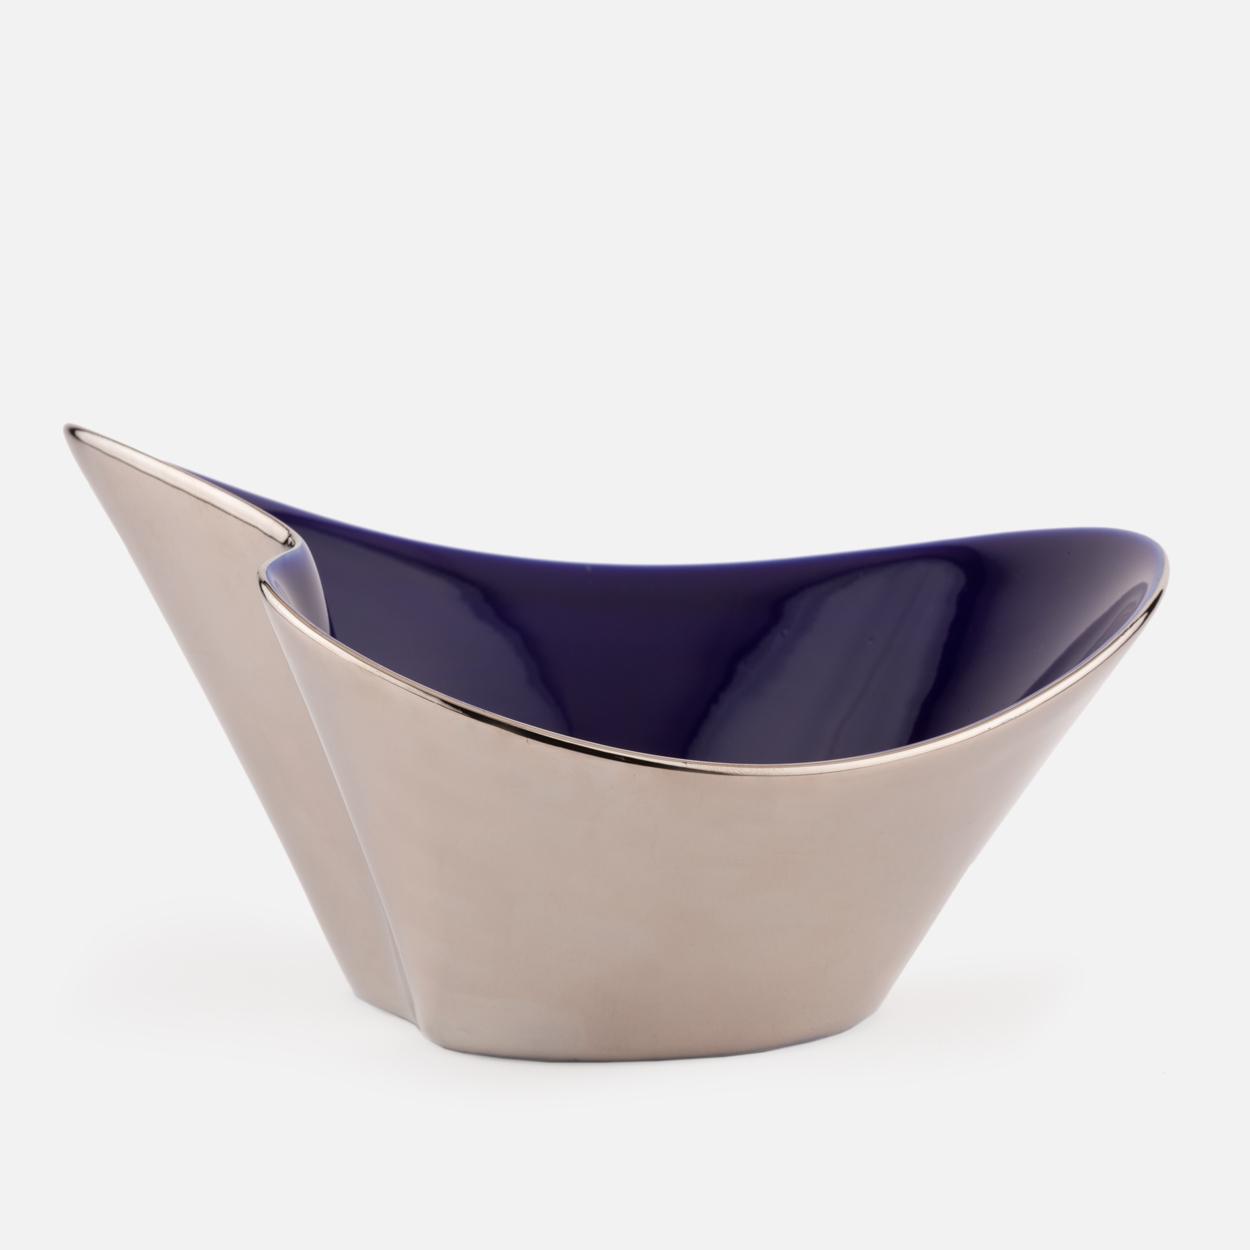 Blue porcelain bowl